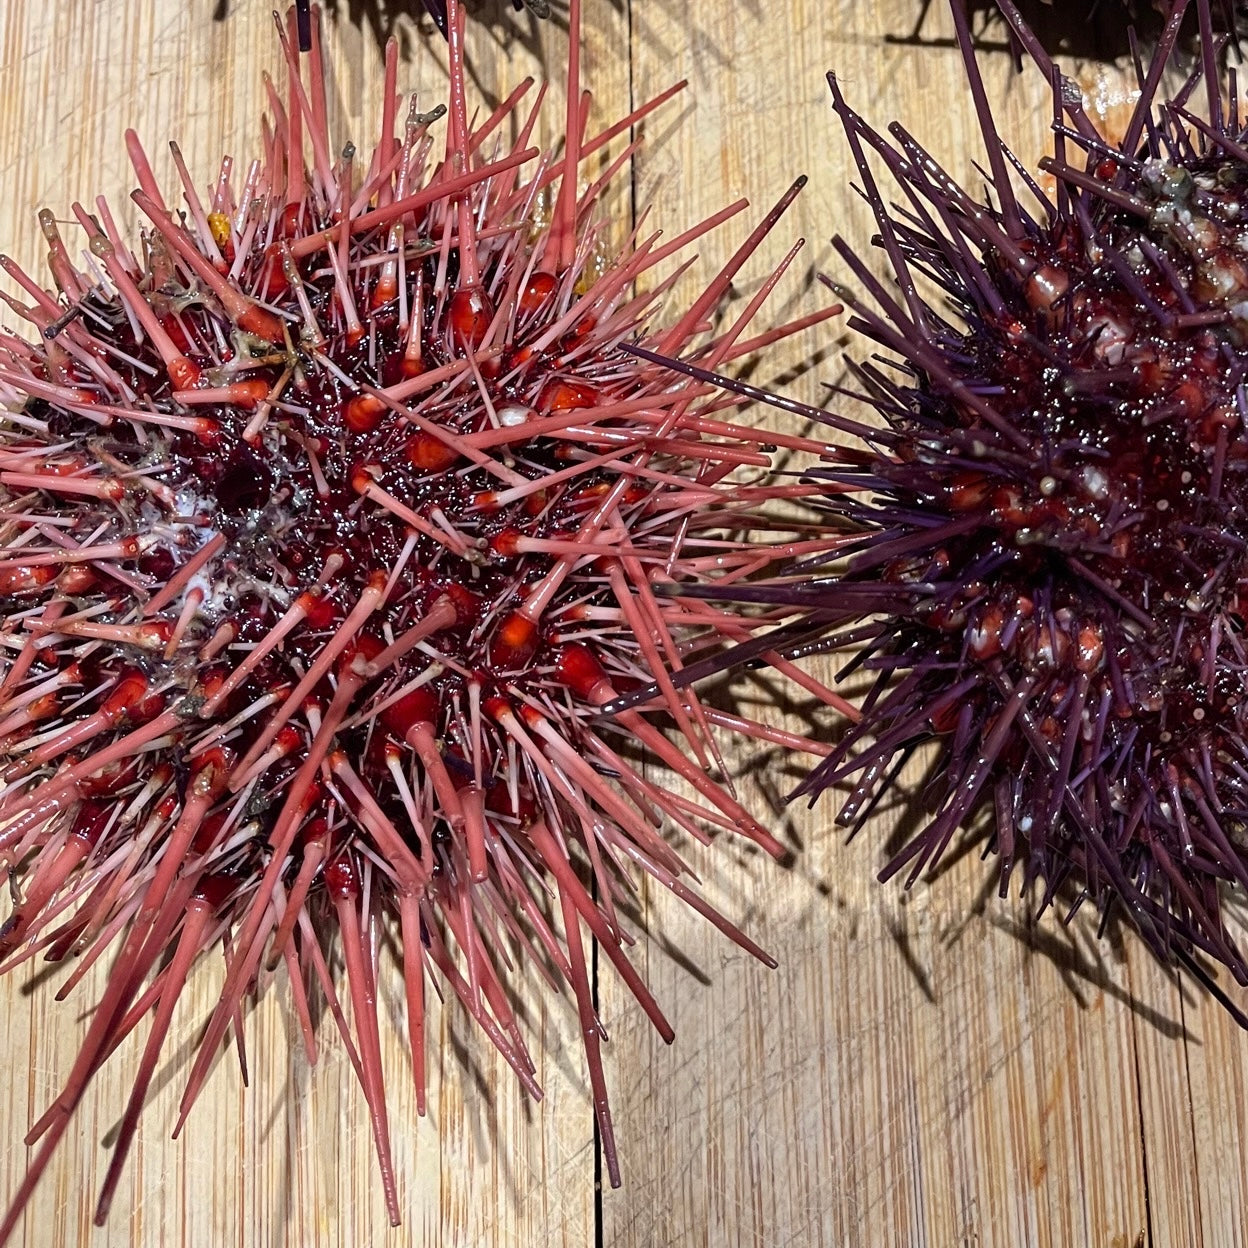 
                  
                    Live Red Sea Urchin 活红海胆
                  
                